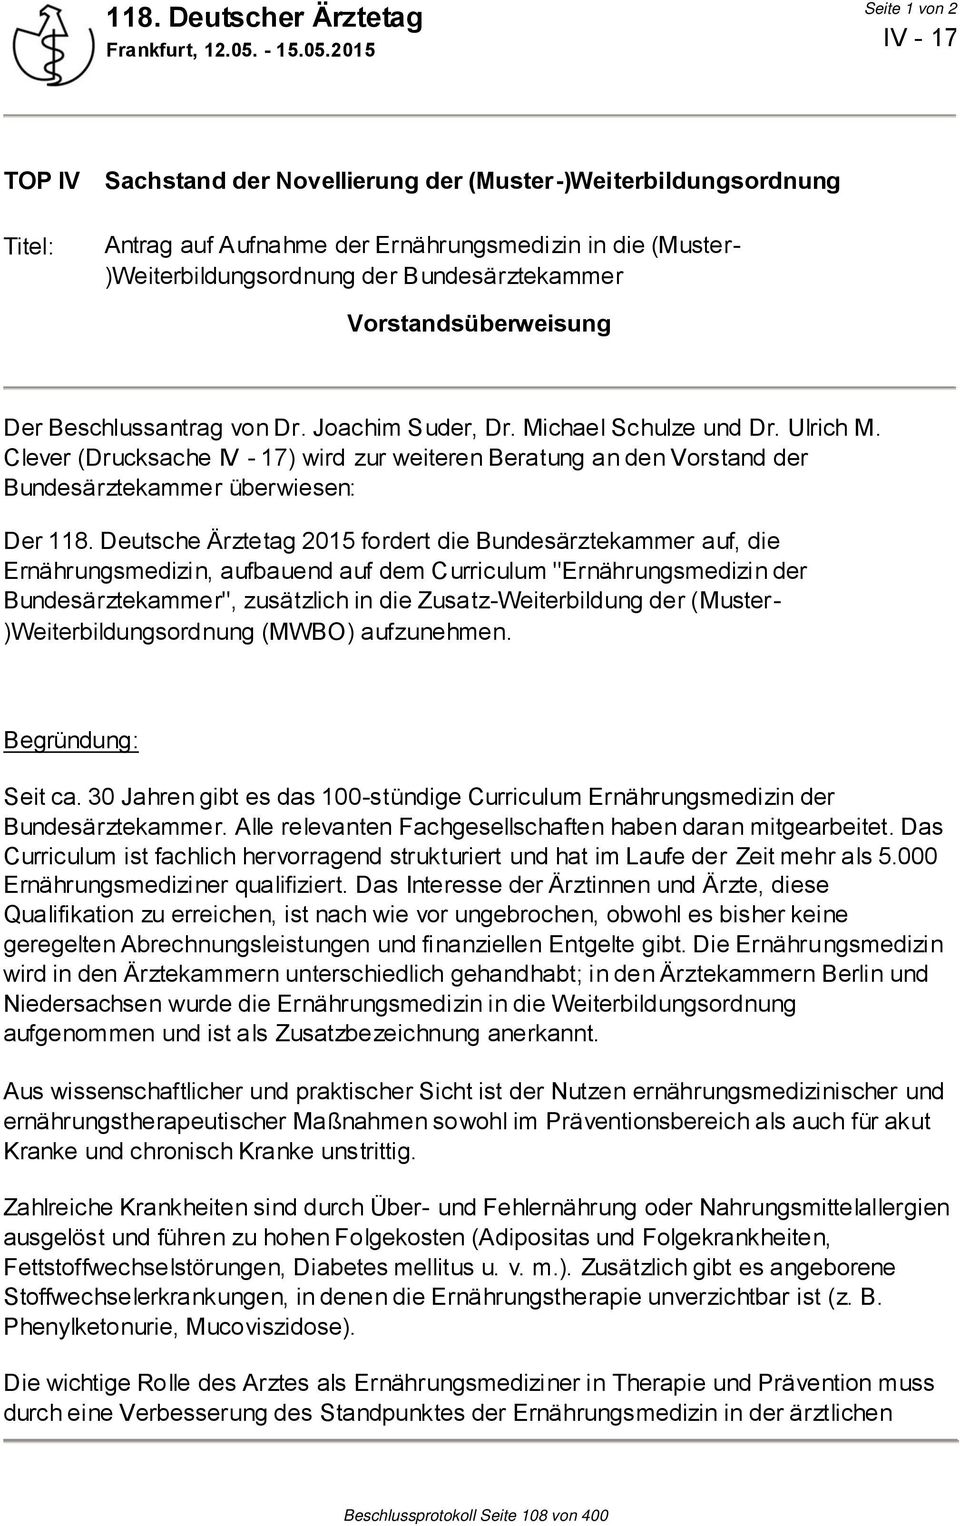 Deutsche Ärztetag 2015 fordert die Bundesärztekammer auf, die Ernährungsmedizin, aufbauend auf dem Curriculum "Ernährungsmedizin der Bundesärztekammer", zusätzlich in die Zusatz-Weiterbildung der